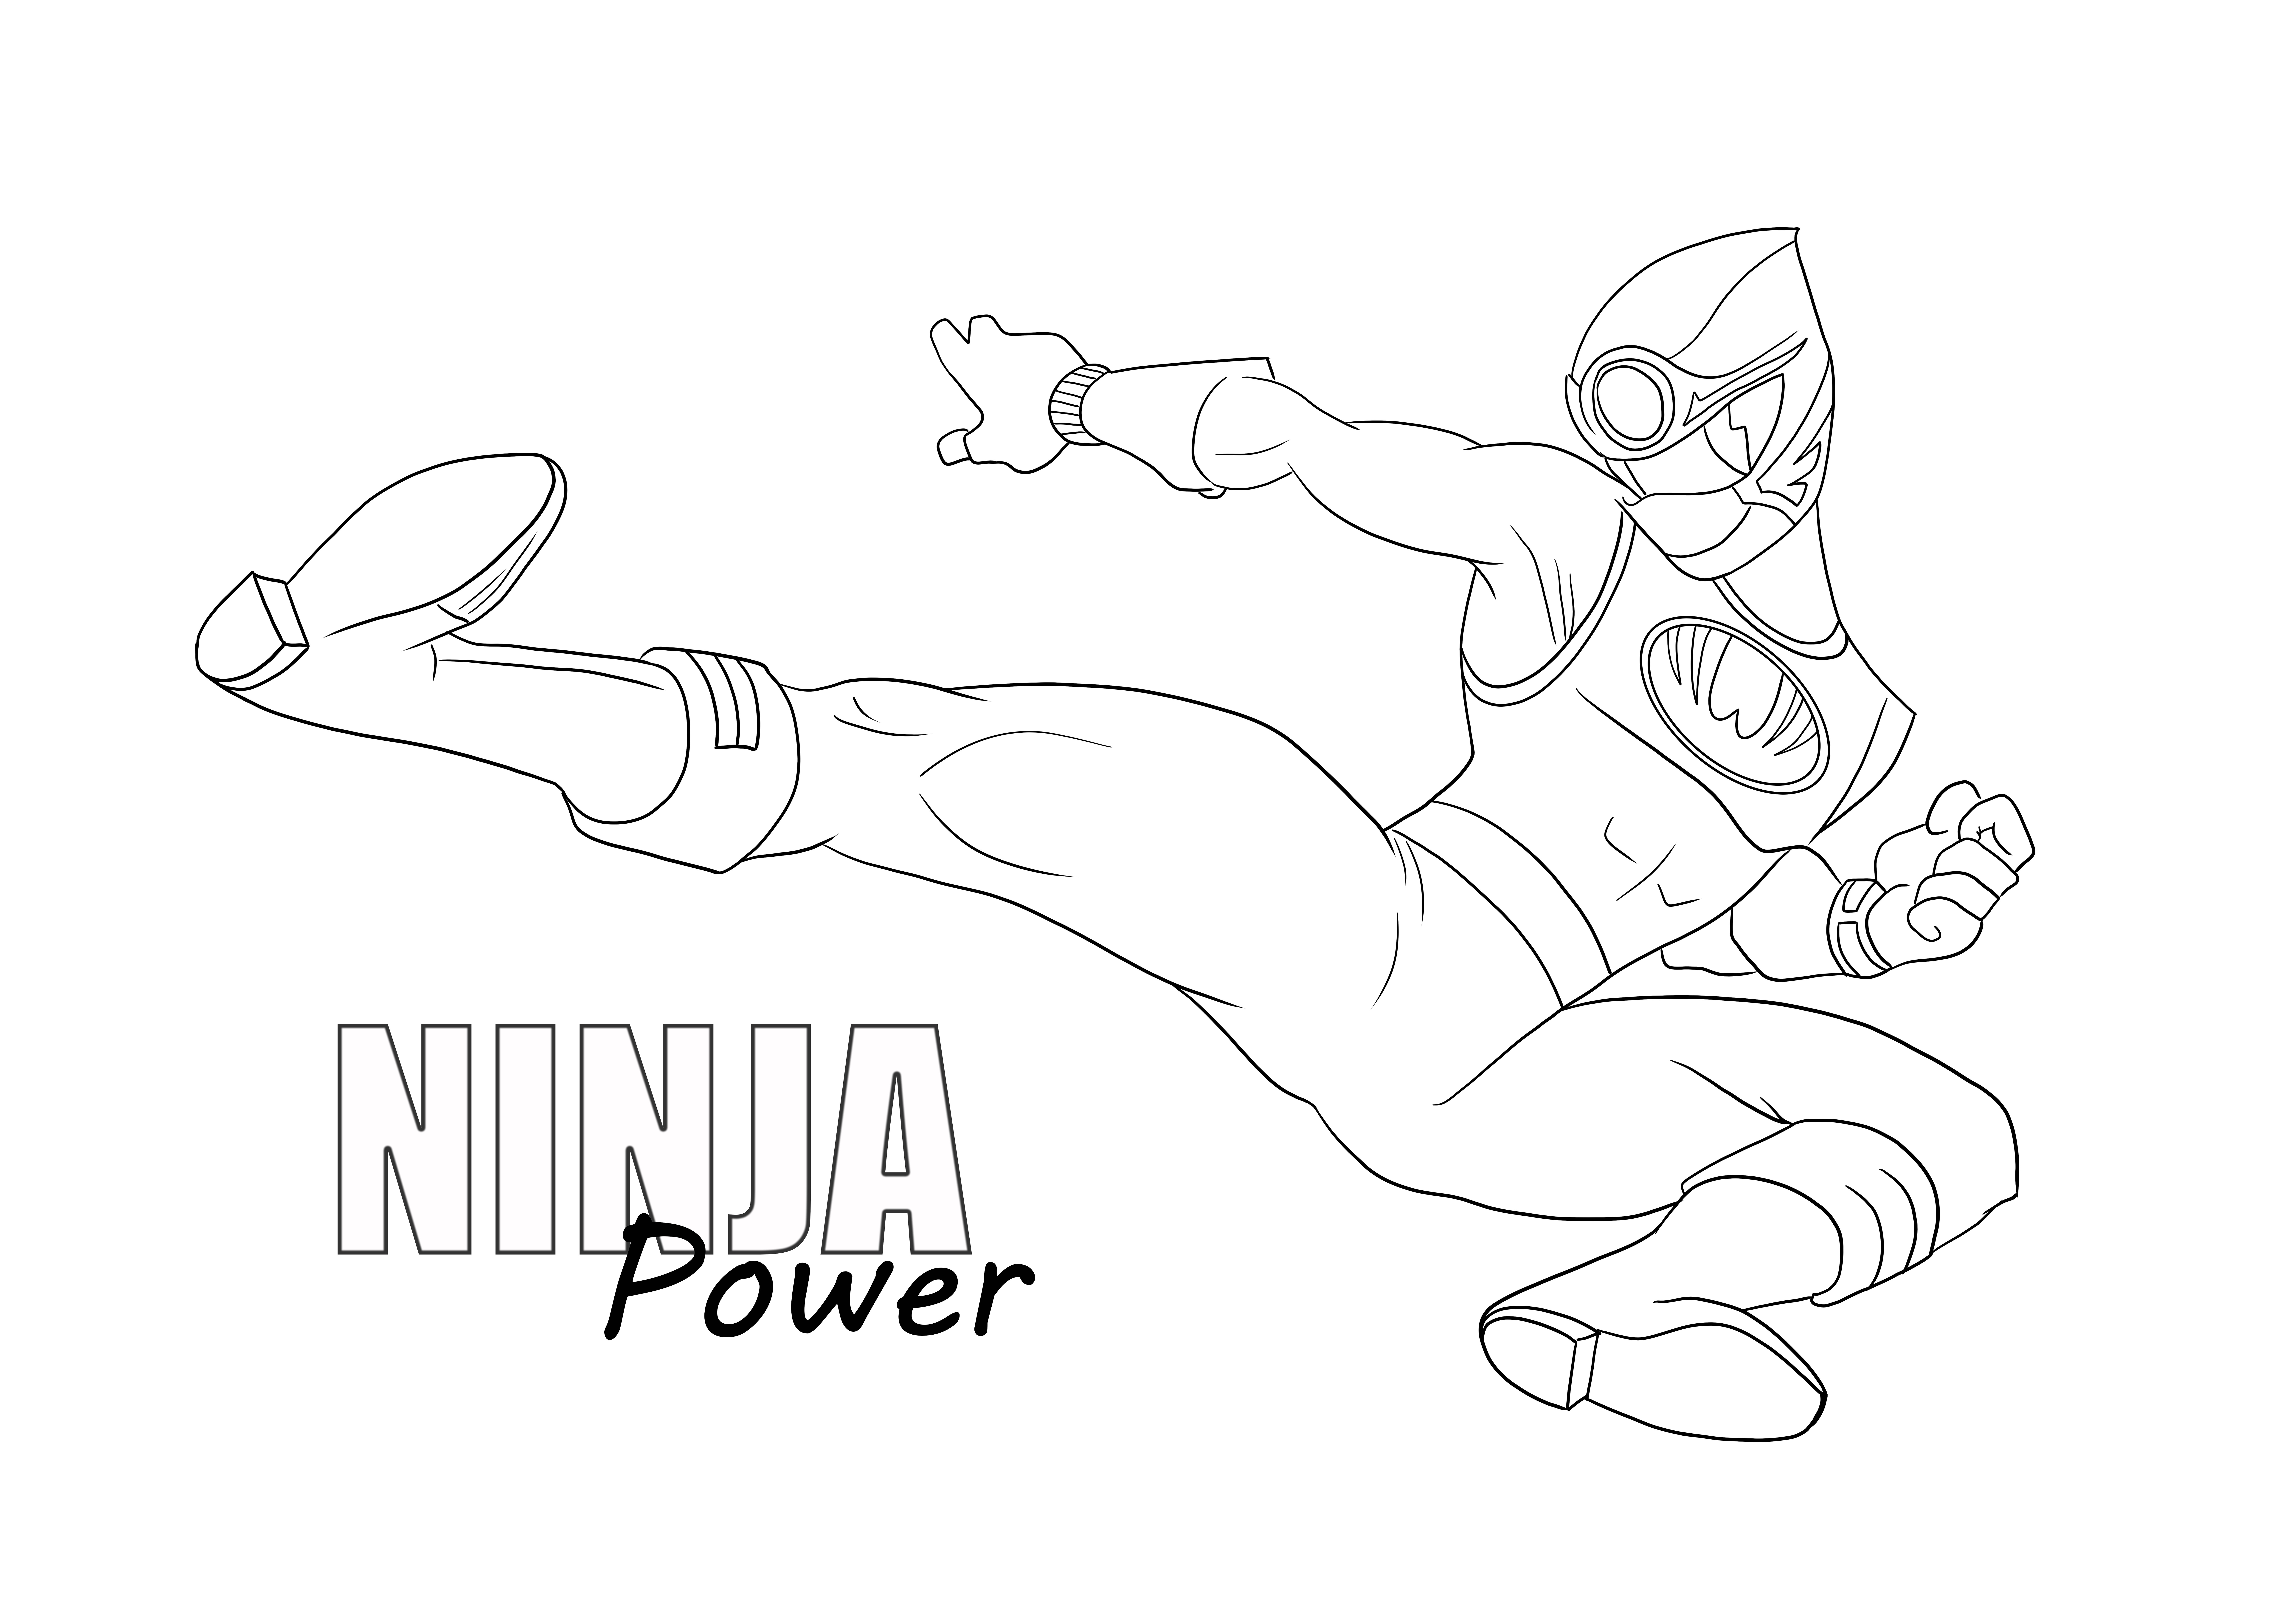 Le pouvoir Ninja de colorier et d'imprimer gratuitement pour les enfants de tous âges